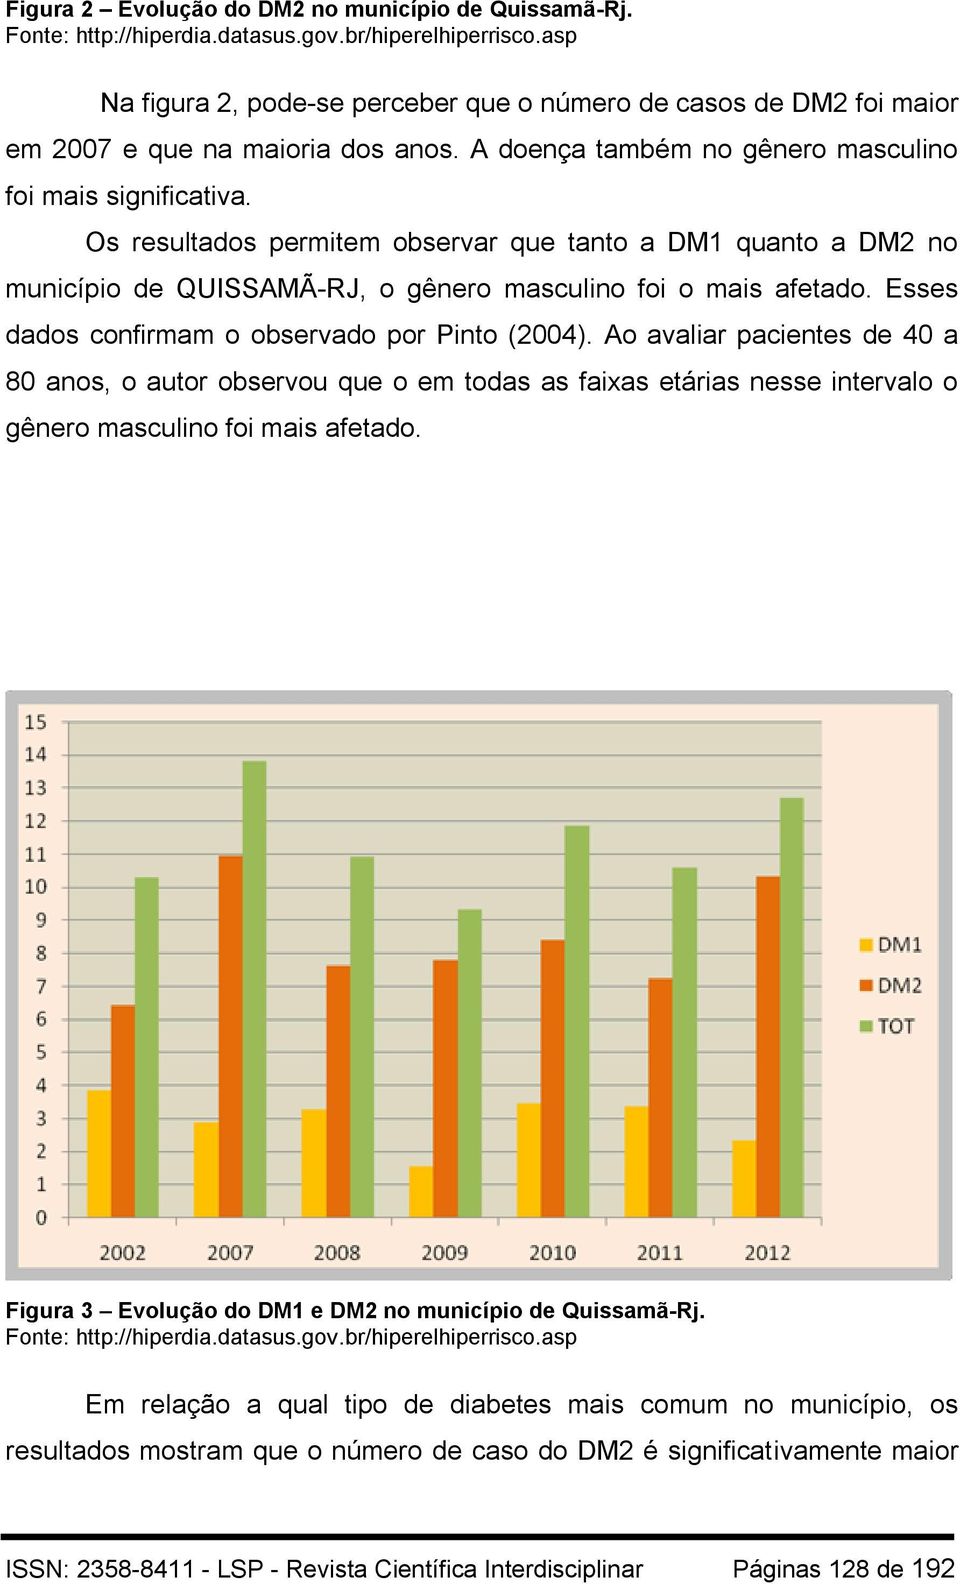 Os resultados permitem observar que tanto a DM1 quanto a DM2 no município de QUISSAMÃ-RJ, o gênero masculino foi o mais afetado. Esses dados confirmam o observado por Pinto (2004).